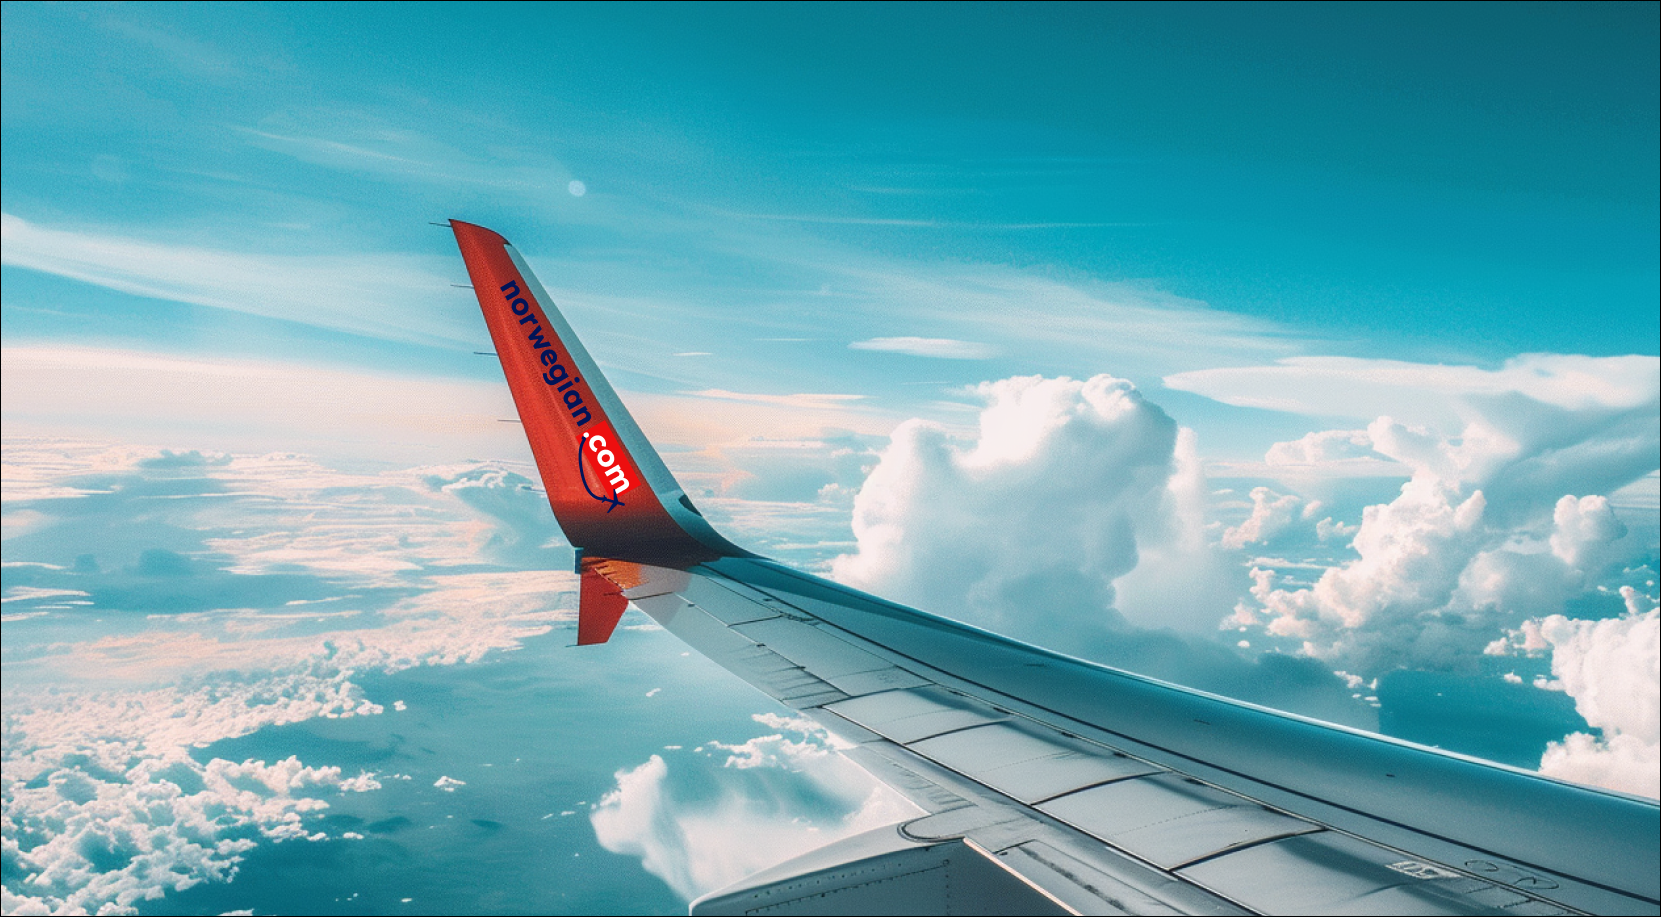 die Flügelspitze eines Flugzeugs mit dem Schriftzug norwegian.com und einem markanten roten Endteil, das gegen einen klaren Himmel und weiße Wolken abgehoben ist.